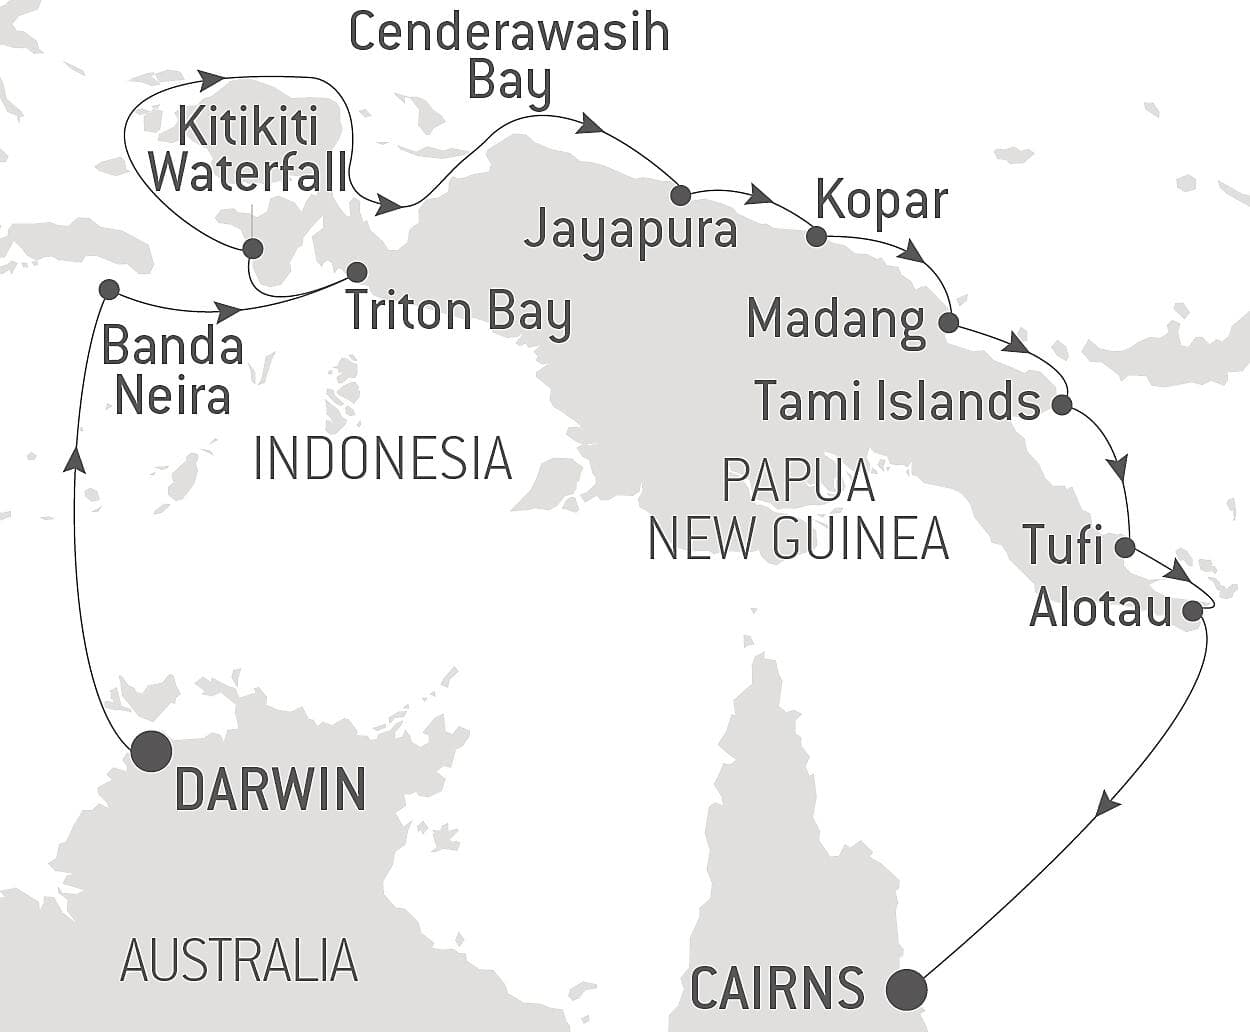 Australian Chairman&apos;s Cruise - New Guinea Odyssey